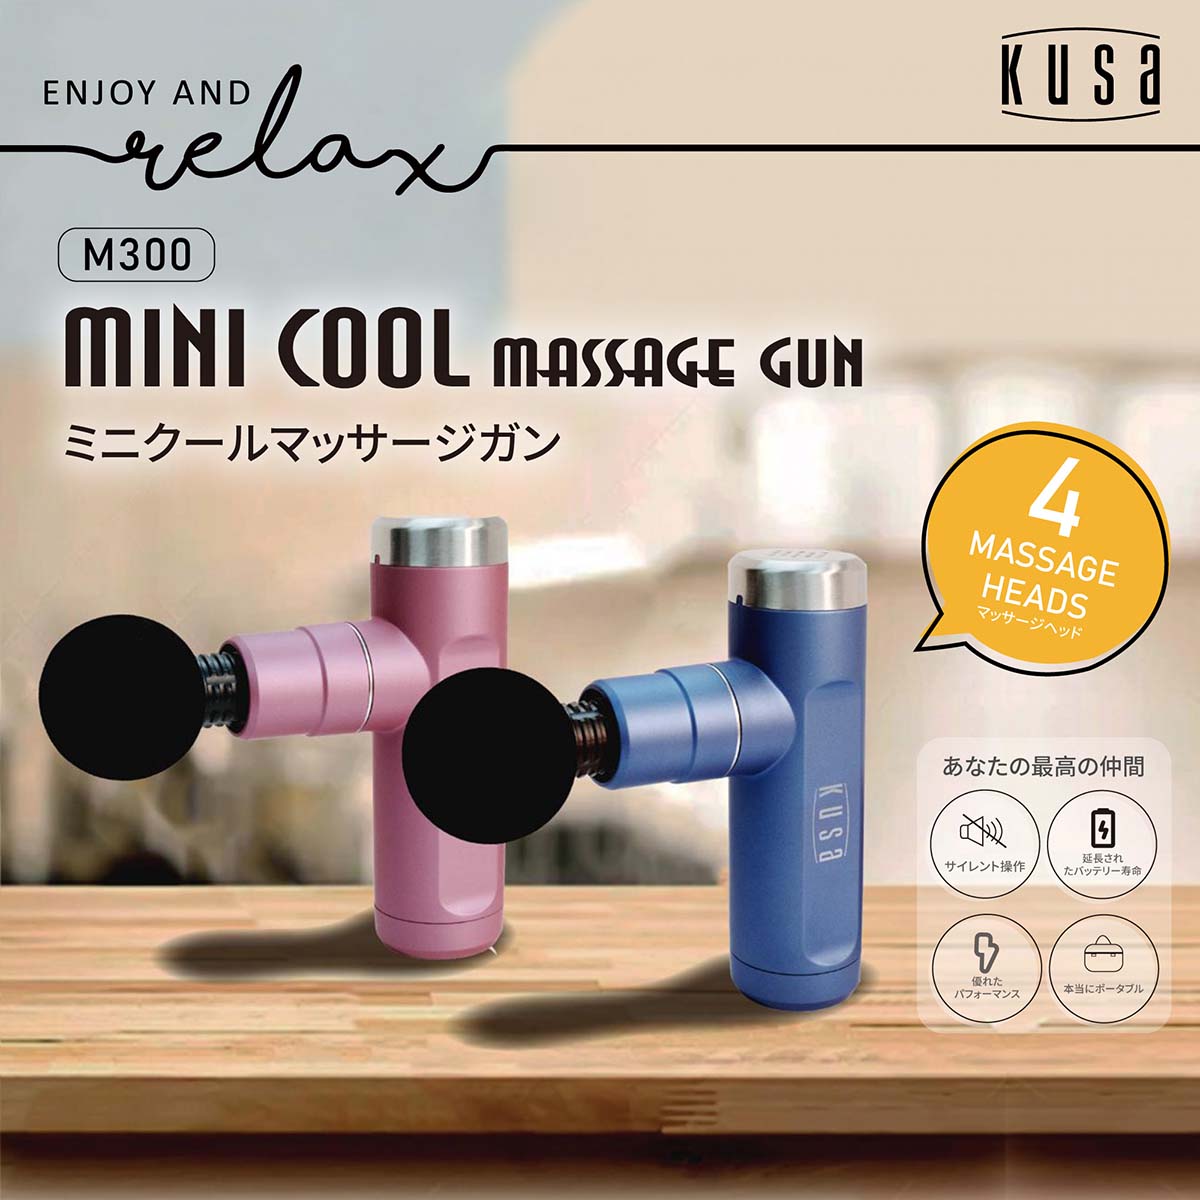 Kusa Mini Cool M300 小型筋膜按摩槍